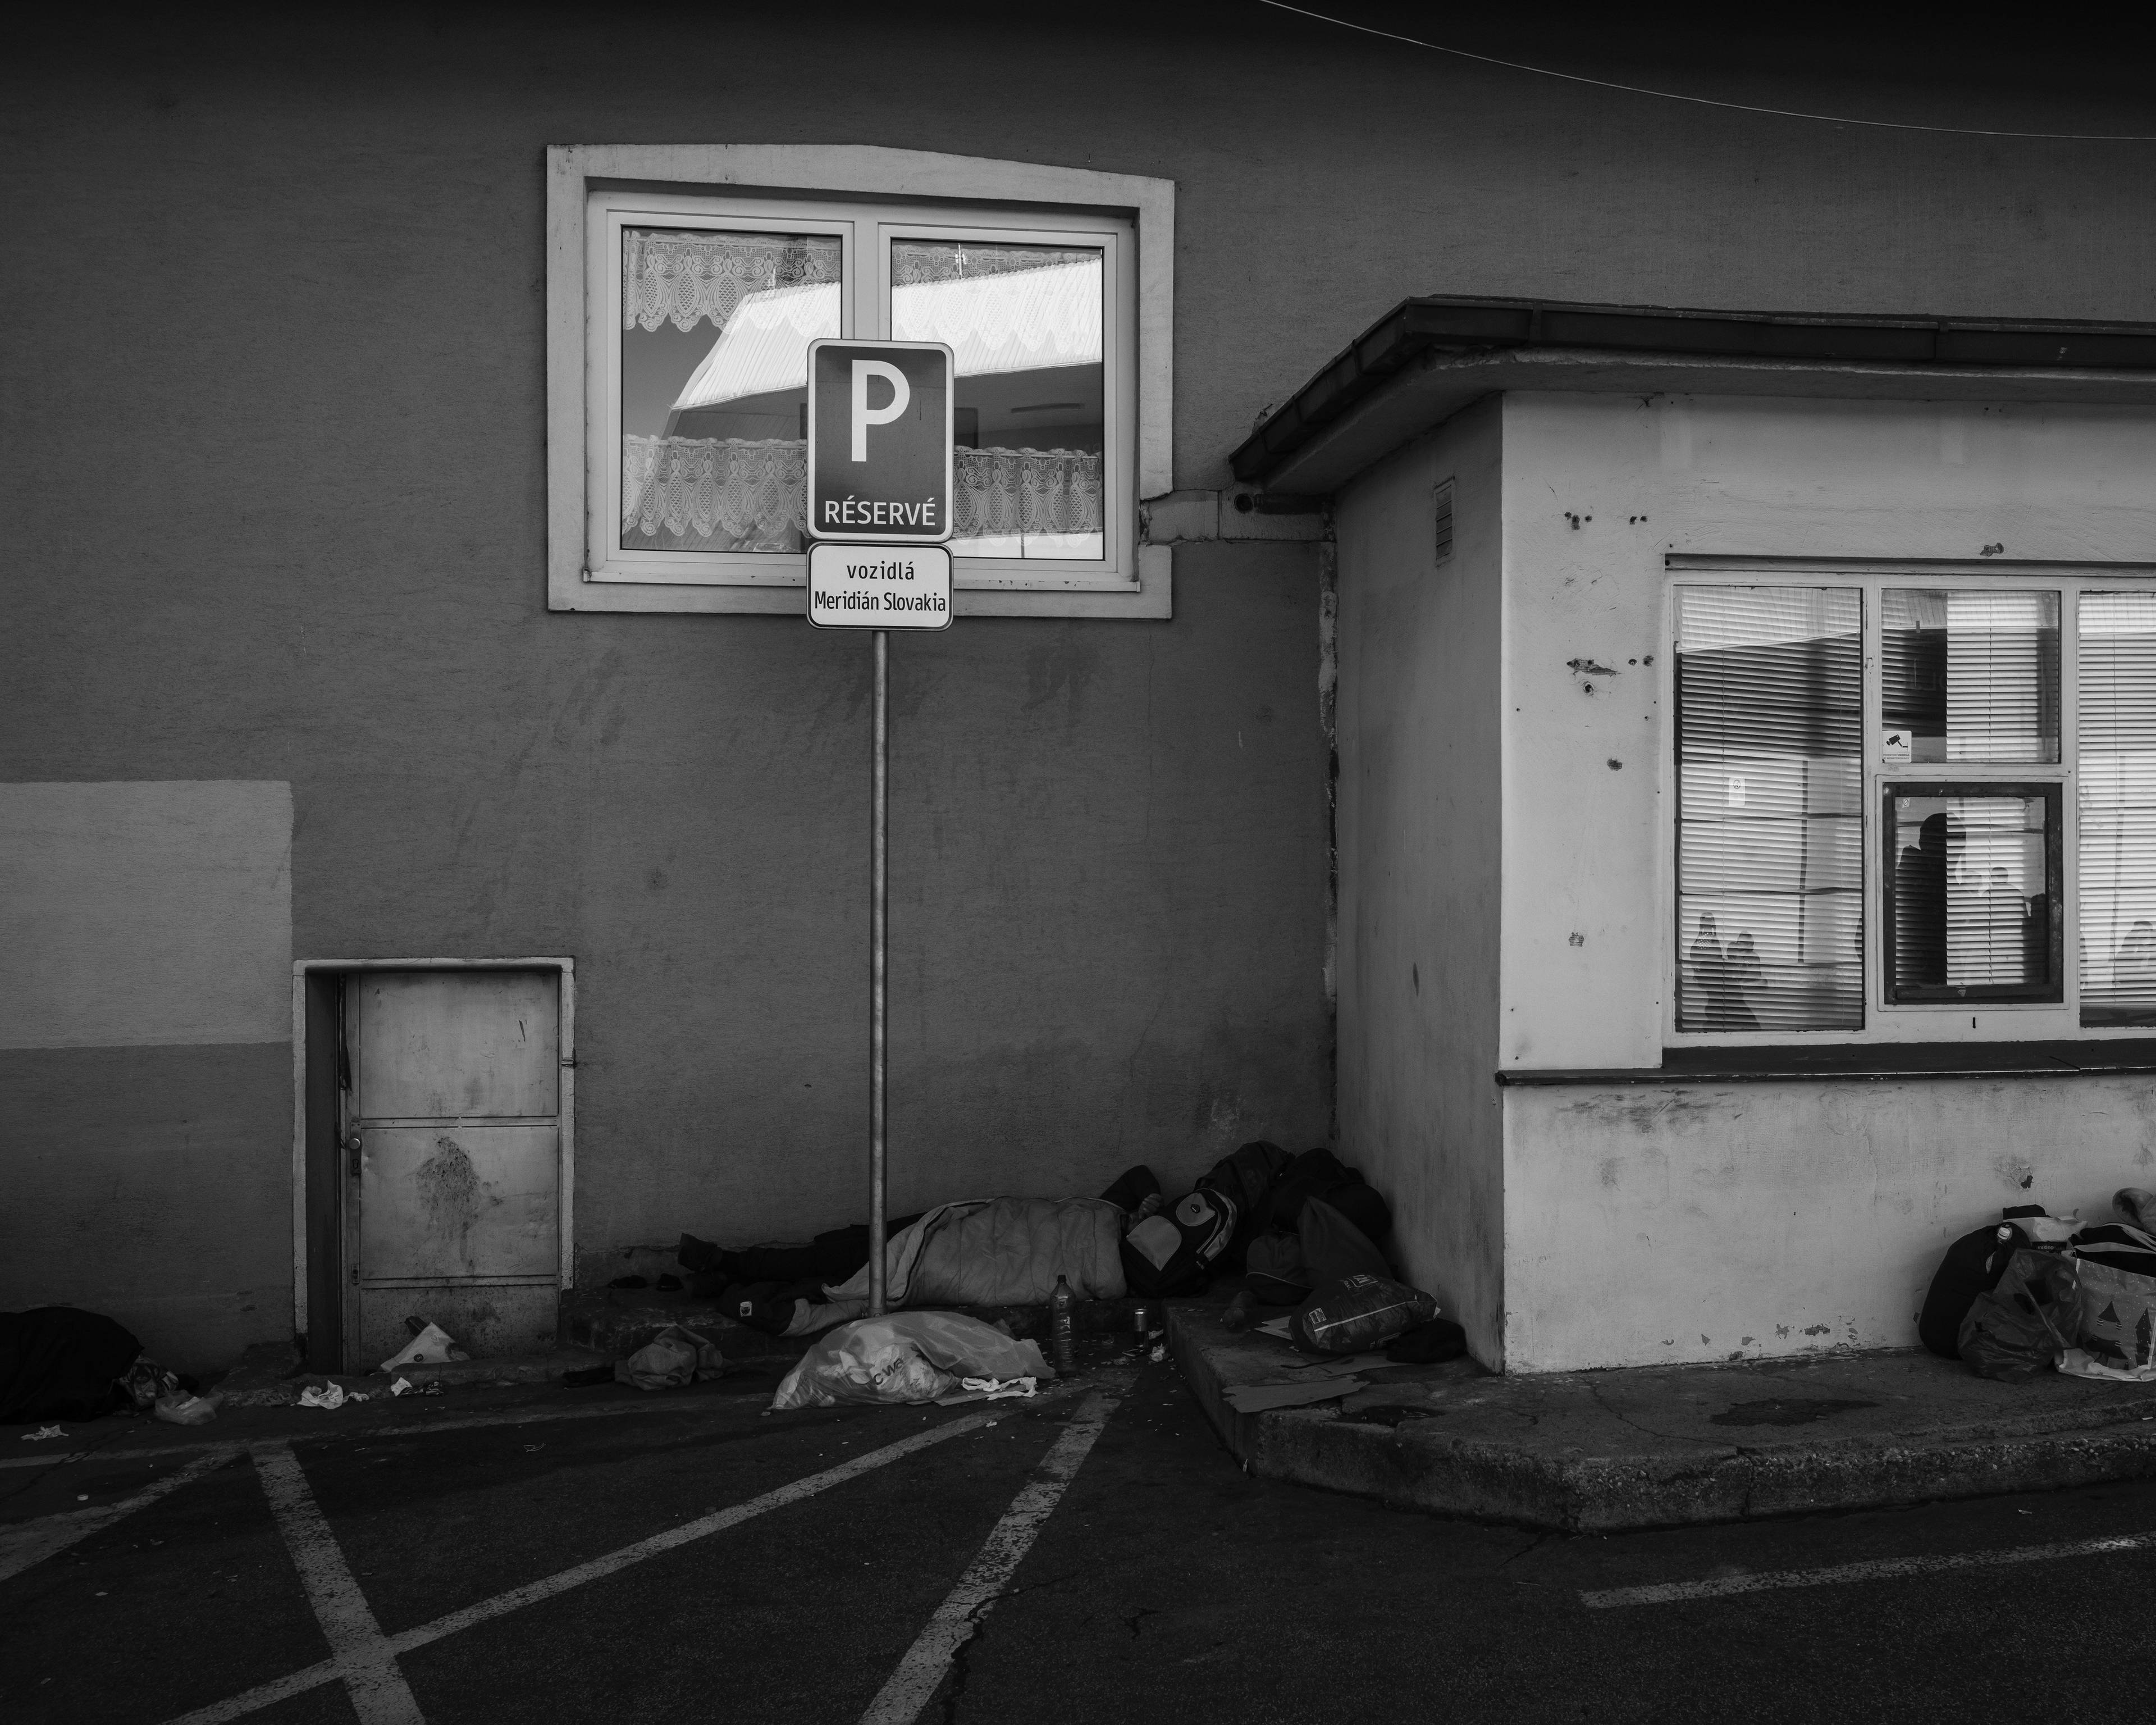 pusty parking przed budynkiem, pod ścianą ktoś leży owinięty w śpiwór, zdjęcie czarno-białe